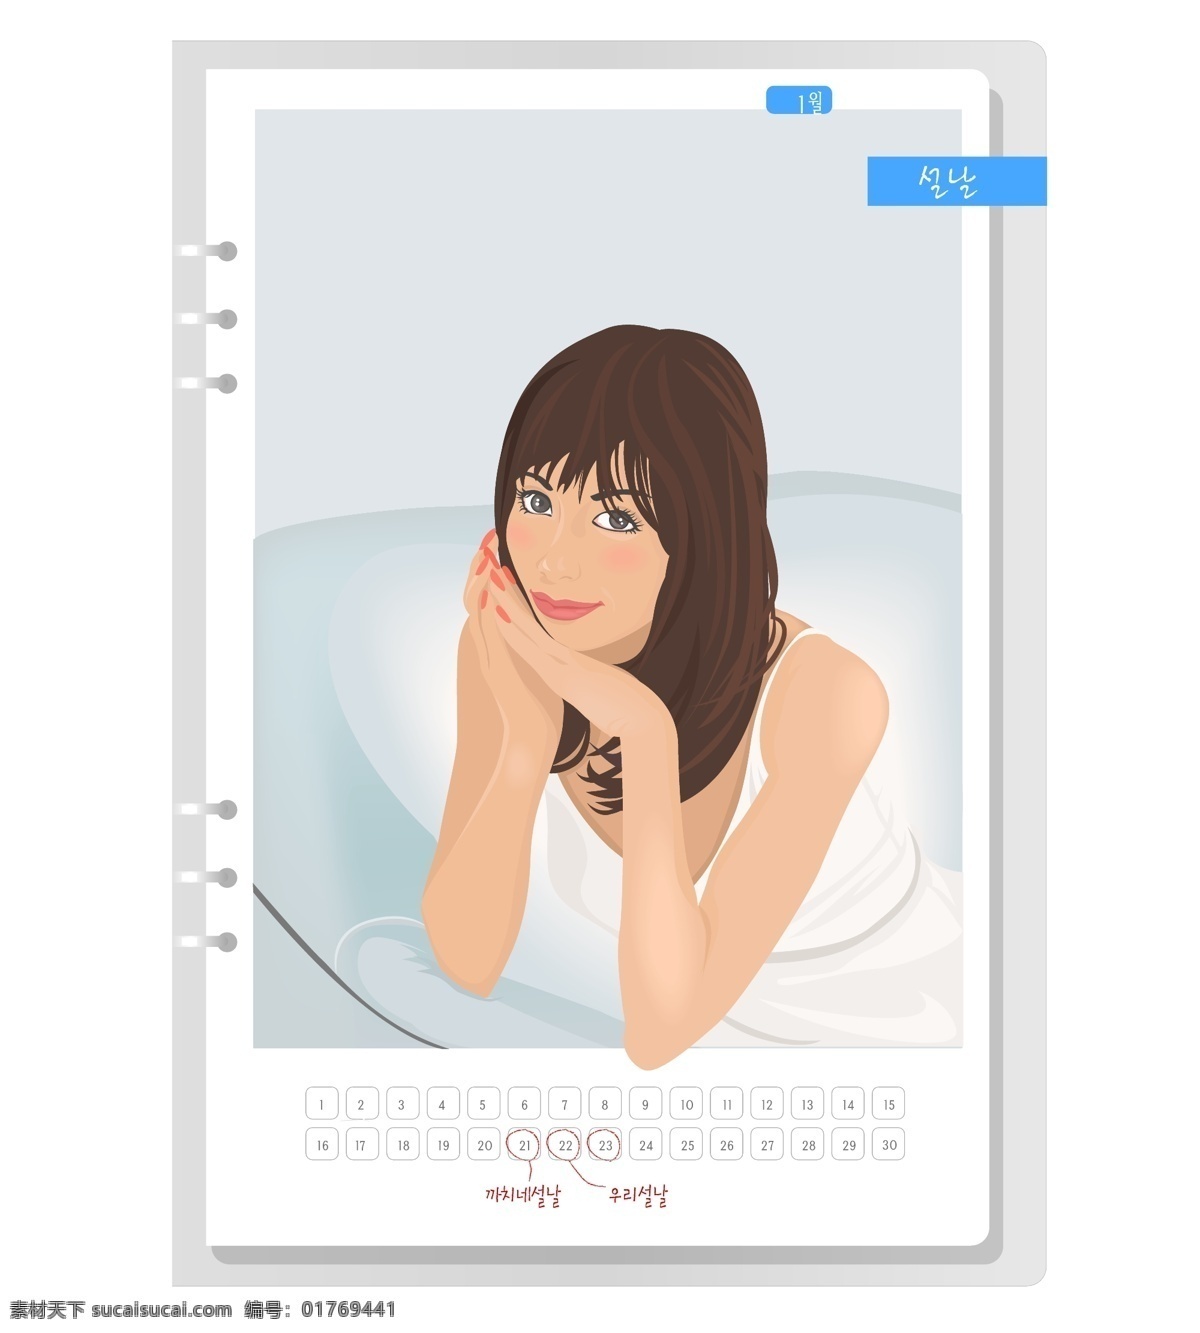 韩国 女生 月历 卡 矢量图 标签cdr 卡通cdr 卡通素材 女孩卡通图 男孩卡通图 其他矢量图